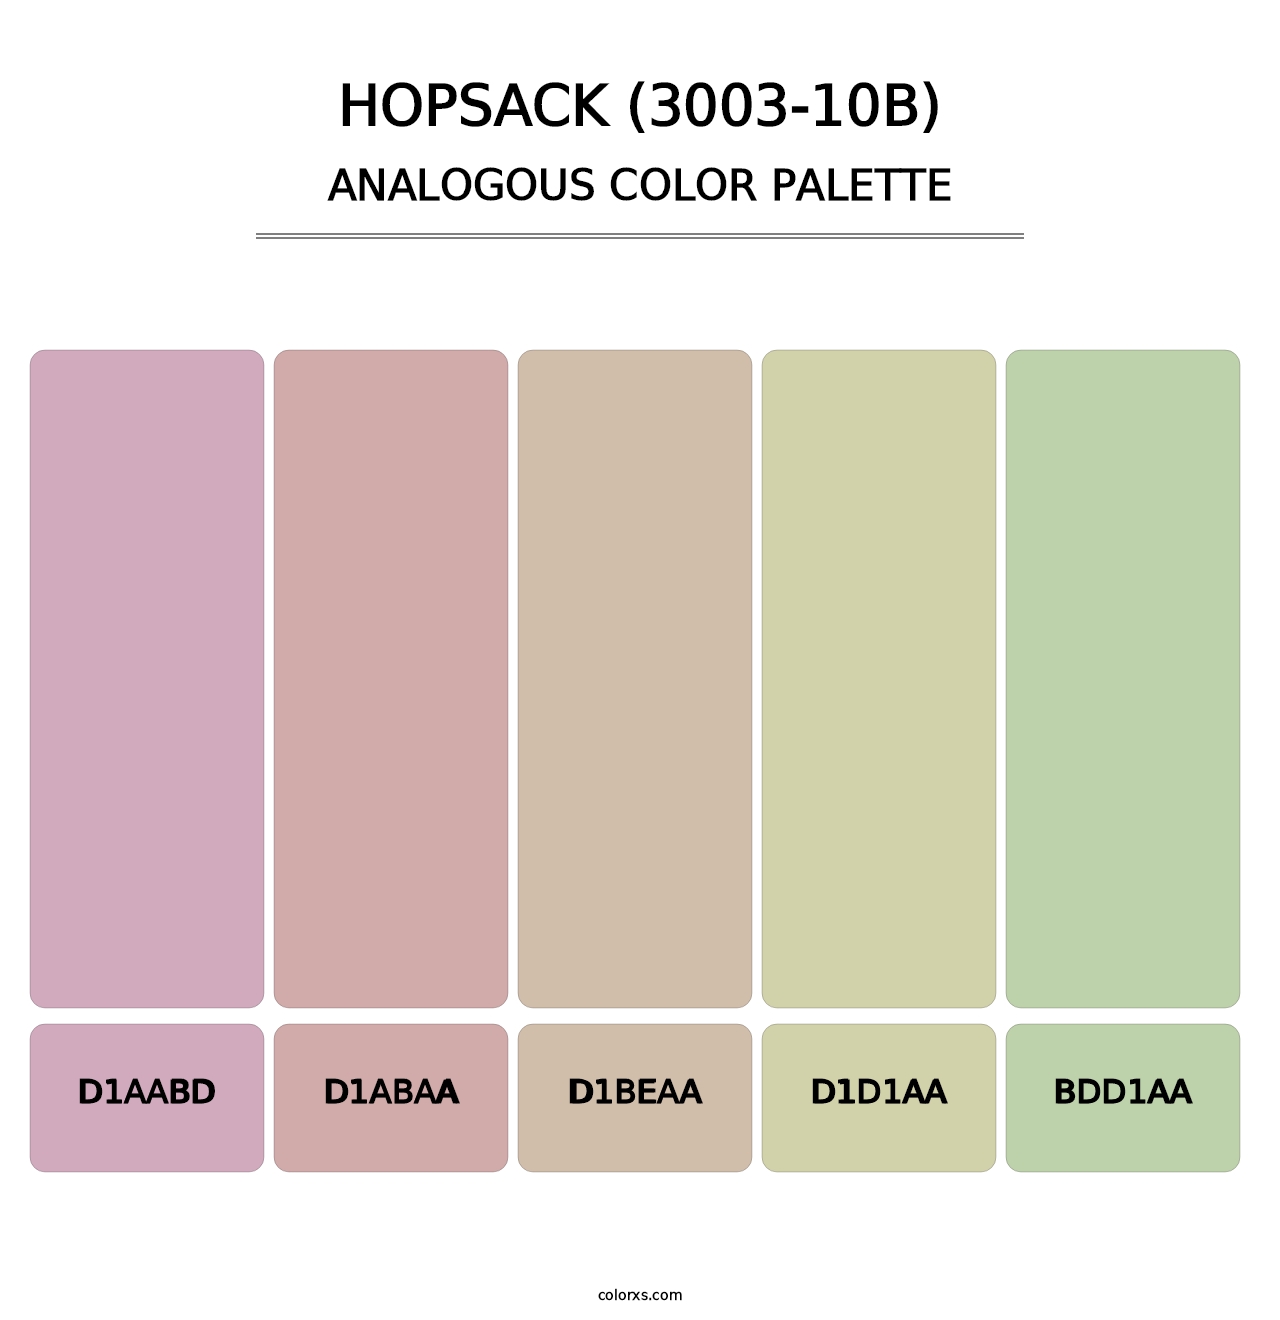 Hopsack (3003-10B) - Analogous Color Palette